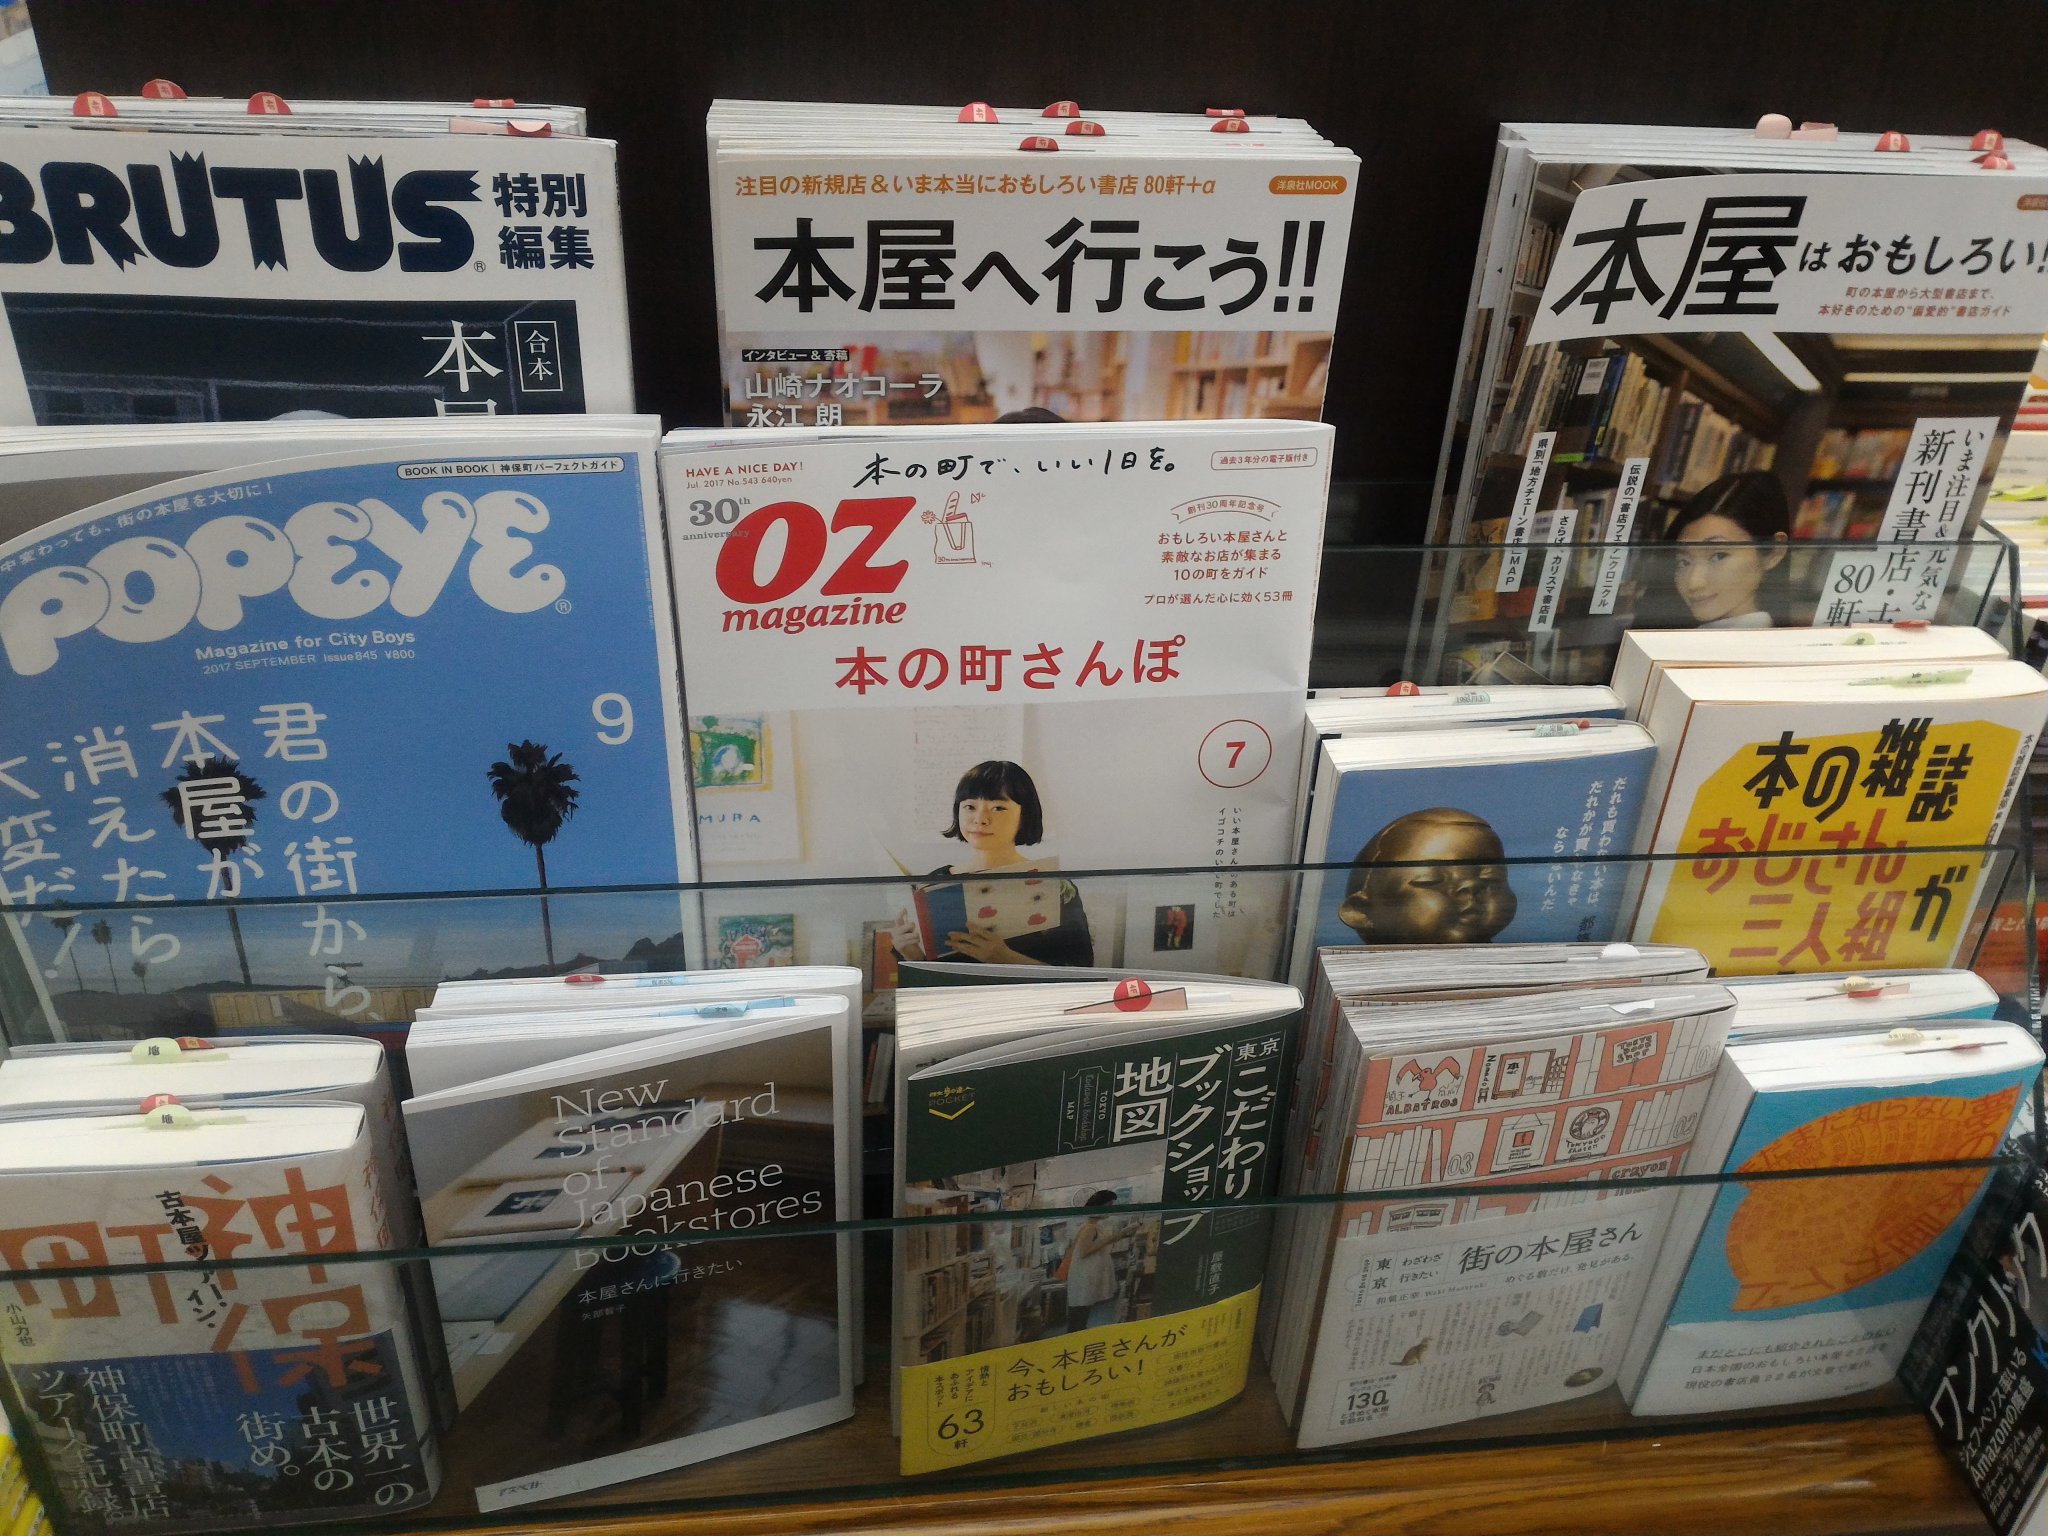 ジュンク堂書店池袋本店 Auf Twitter まずは本屋 ガイド 書籍だけでなく 雑誌でも特集が続きました 金太郎飴書店 なんて言い方もありますが どっこい多種多様な本屋 の形があります 今年の6月に刊行された 東京わざわざ行きたい街の本屋さん G B など 魅力